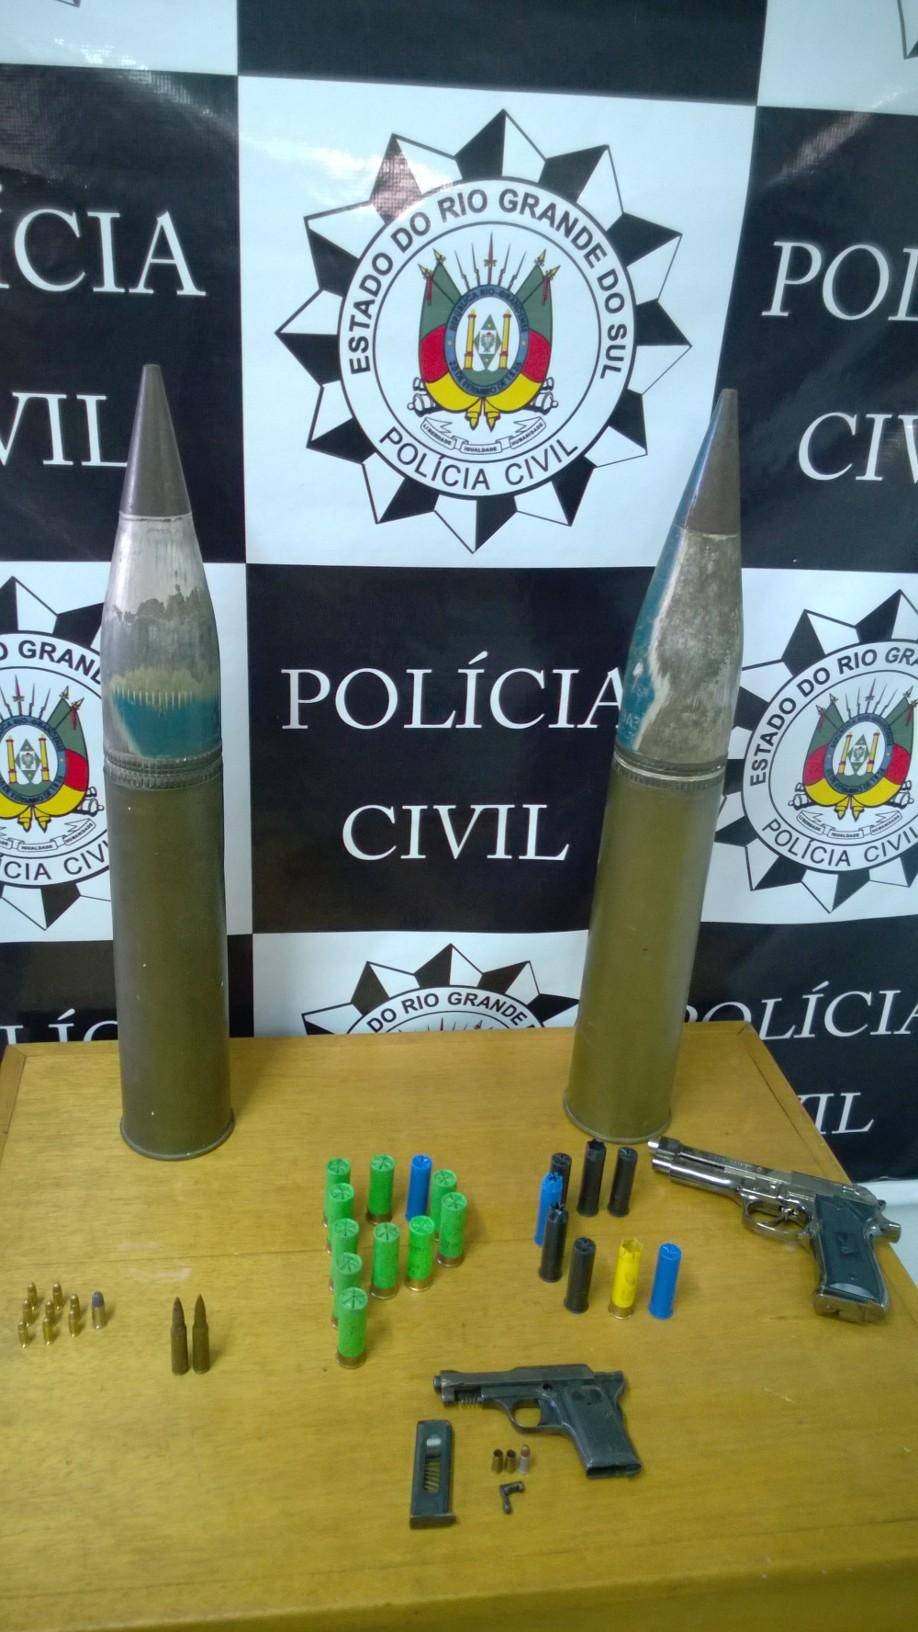  Polícia de Farroupilha cumpre mandato e encontra munição de fuzil